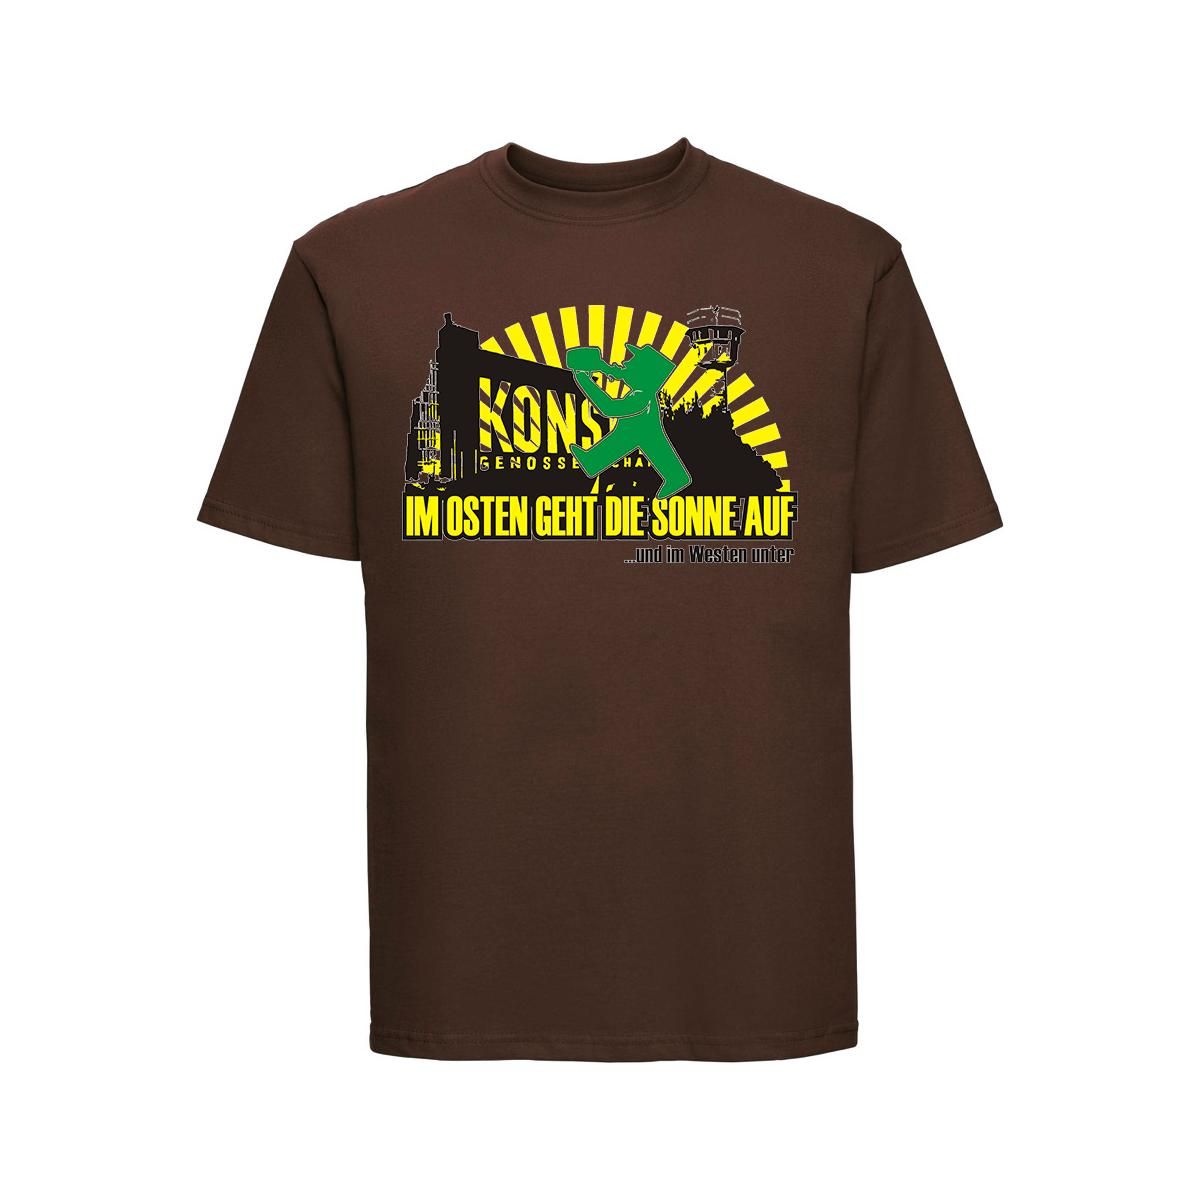 Im Osten geht die Sonne auf - Männer T-Shirt - braun